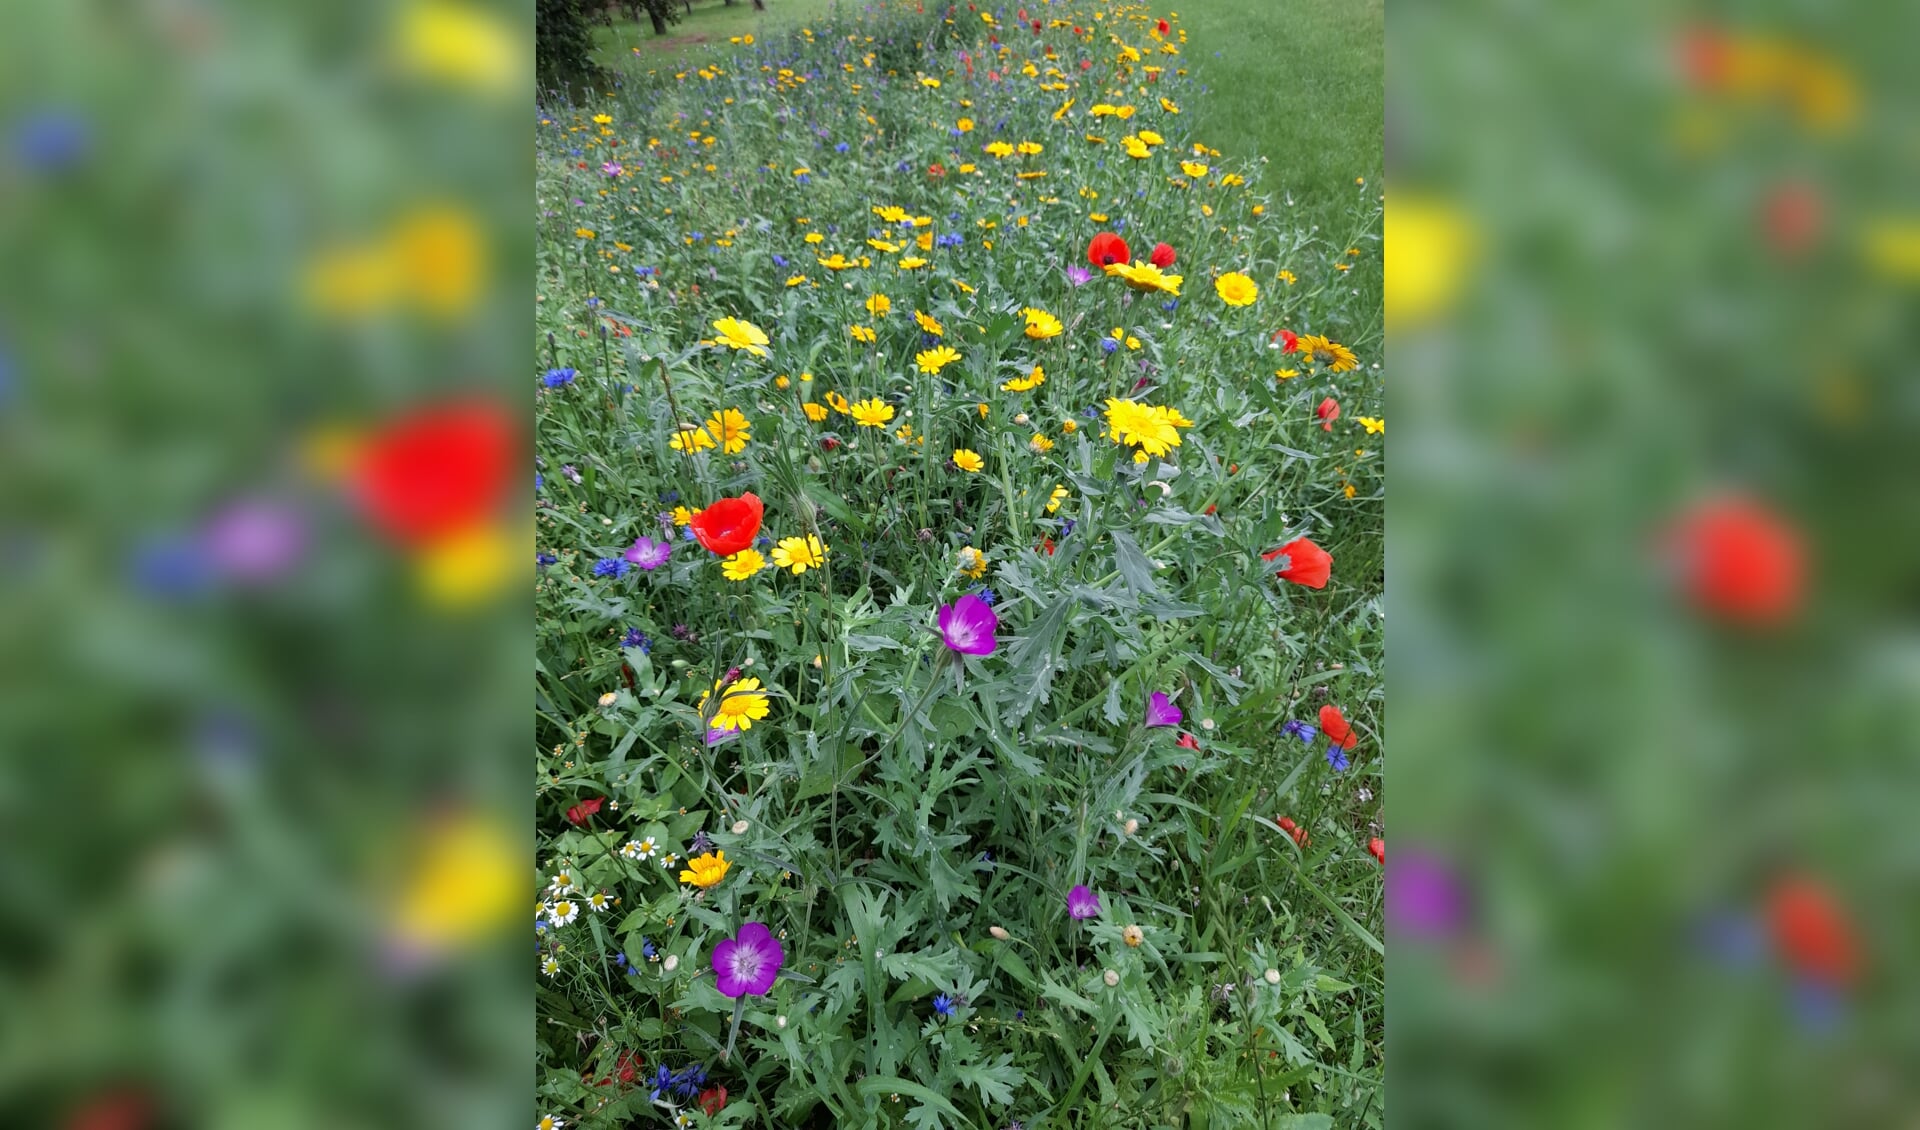 De zaaiactie ‘wilde bloemen- en akkerrandzaad’ van de Werkgroep Buitengebied Halle leverde mooie beelden op. Foto: Erna Vink